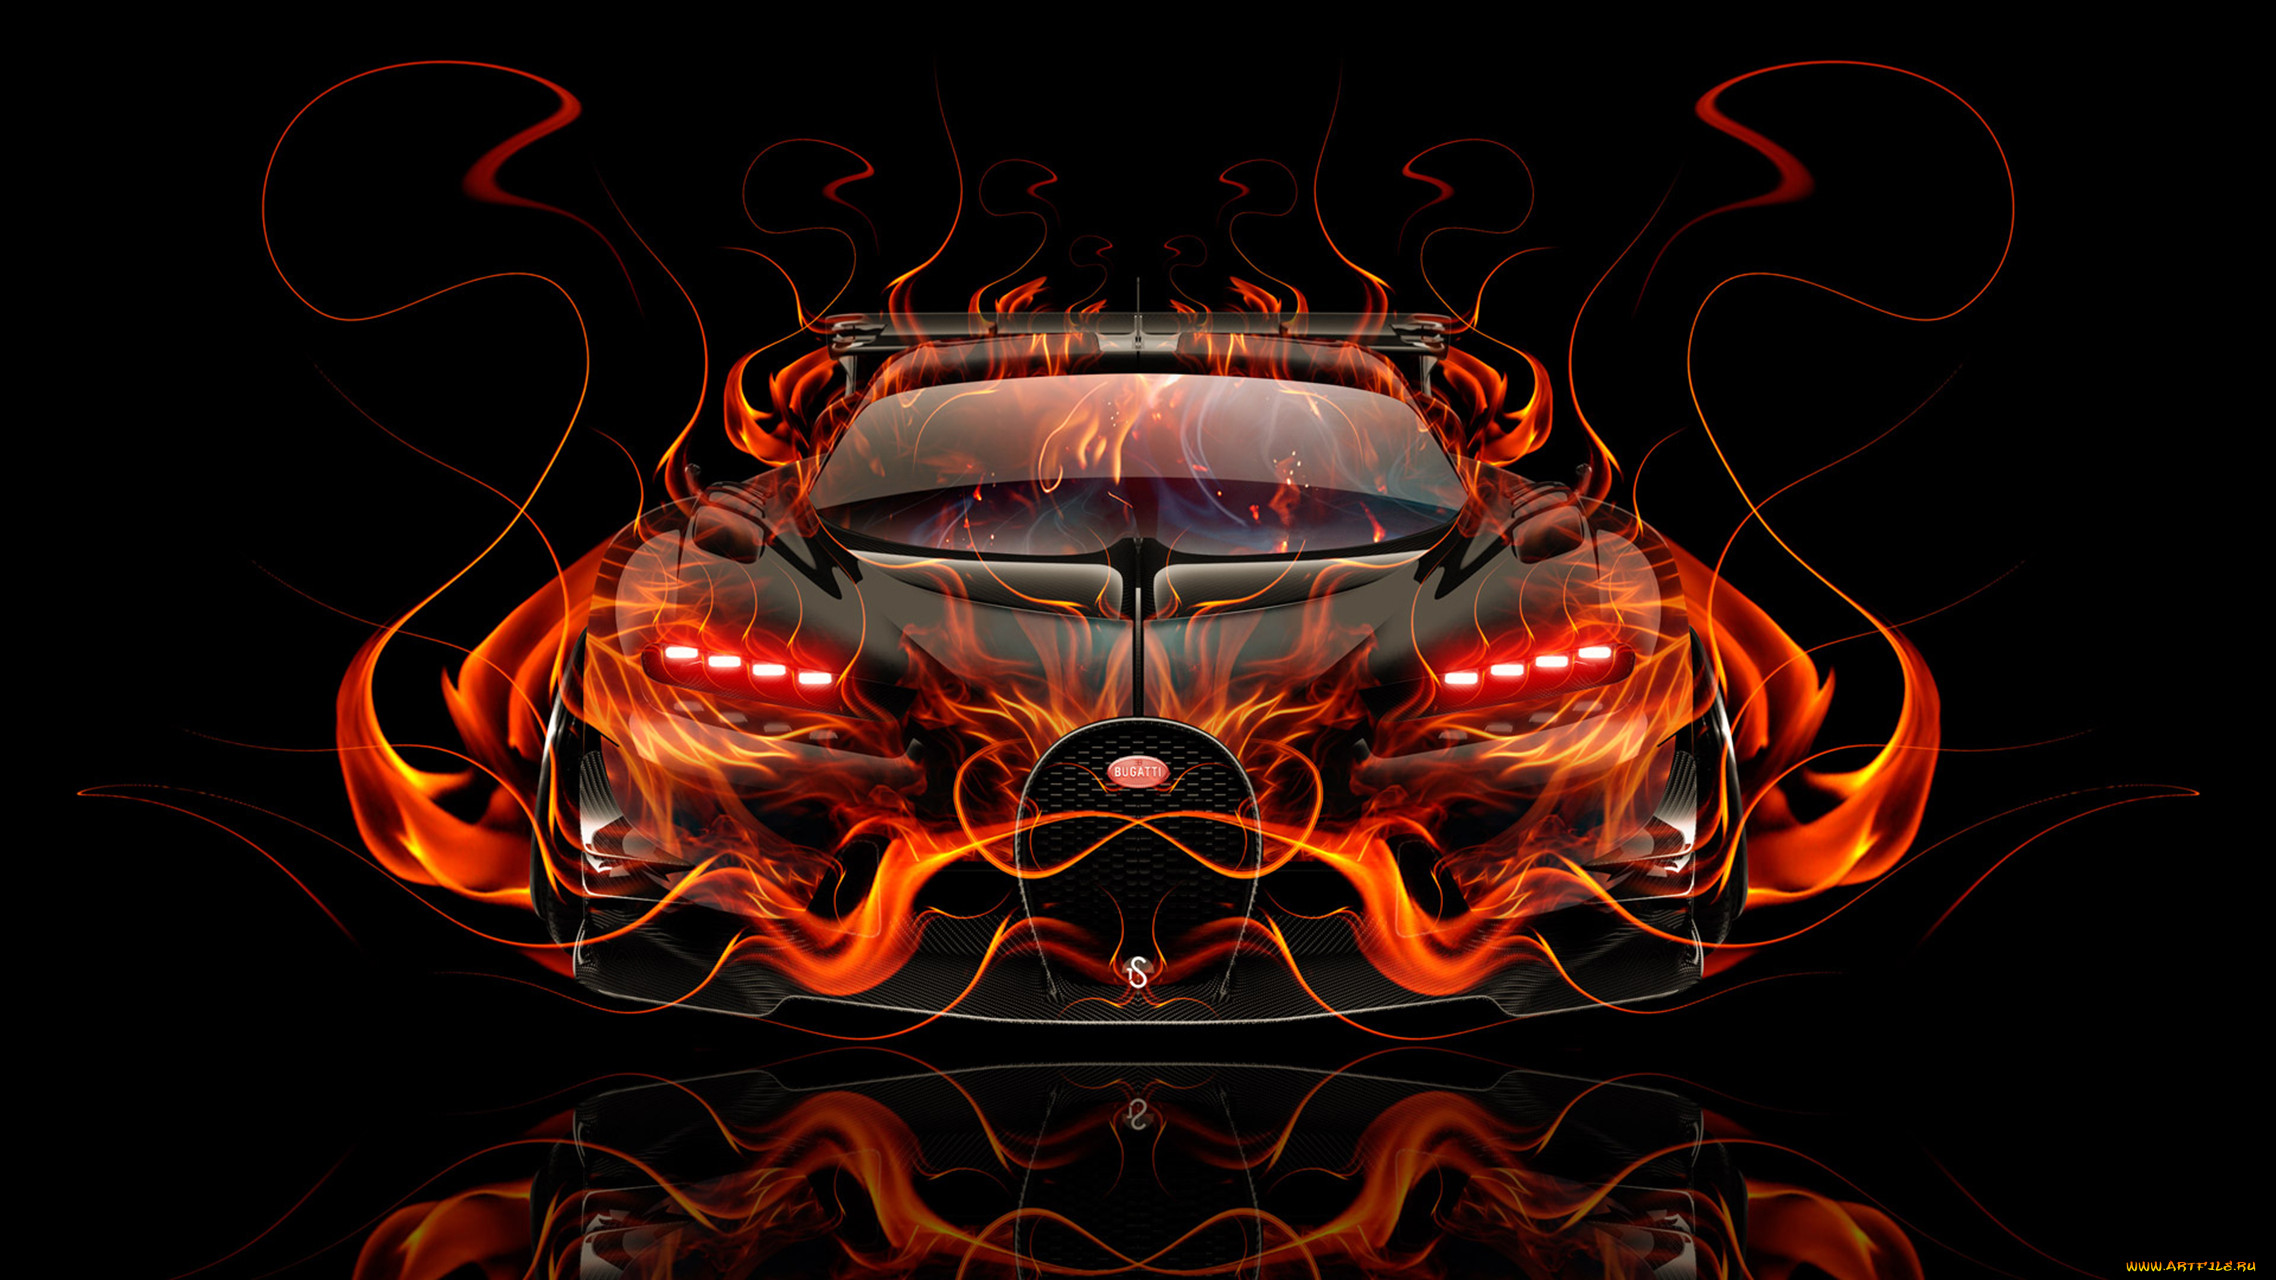 bugatti vision gran turismo side super fire car 2016, , 3, bugatti, vision, gran, turismo, side, super, fire, car, 2016